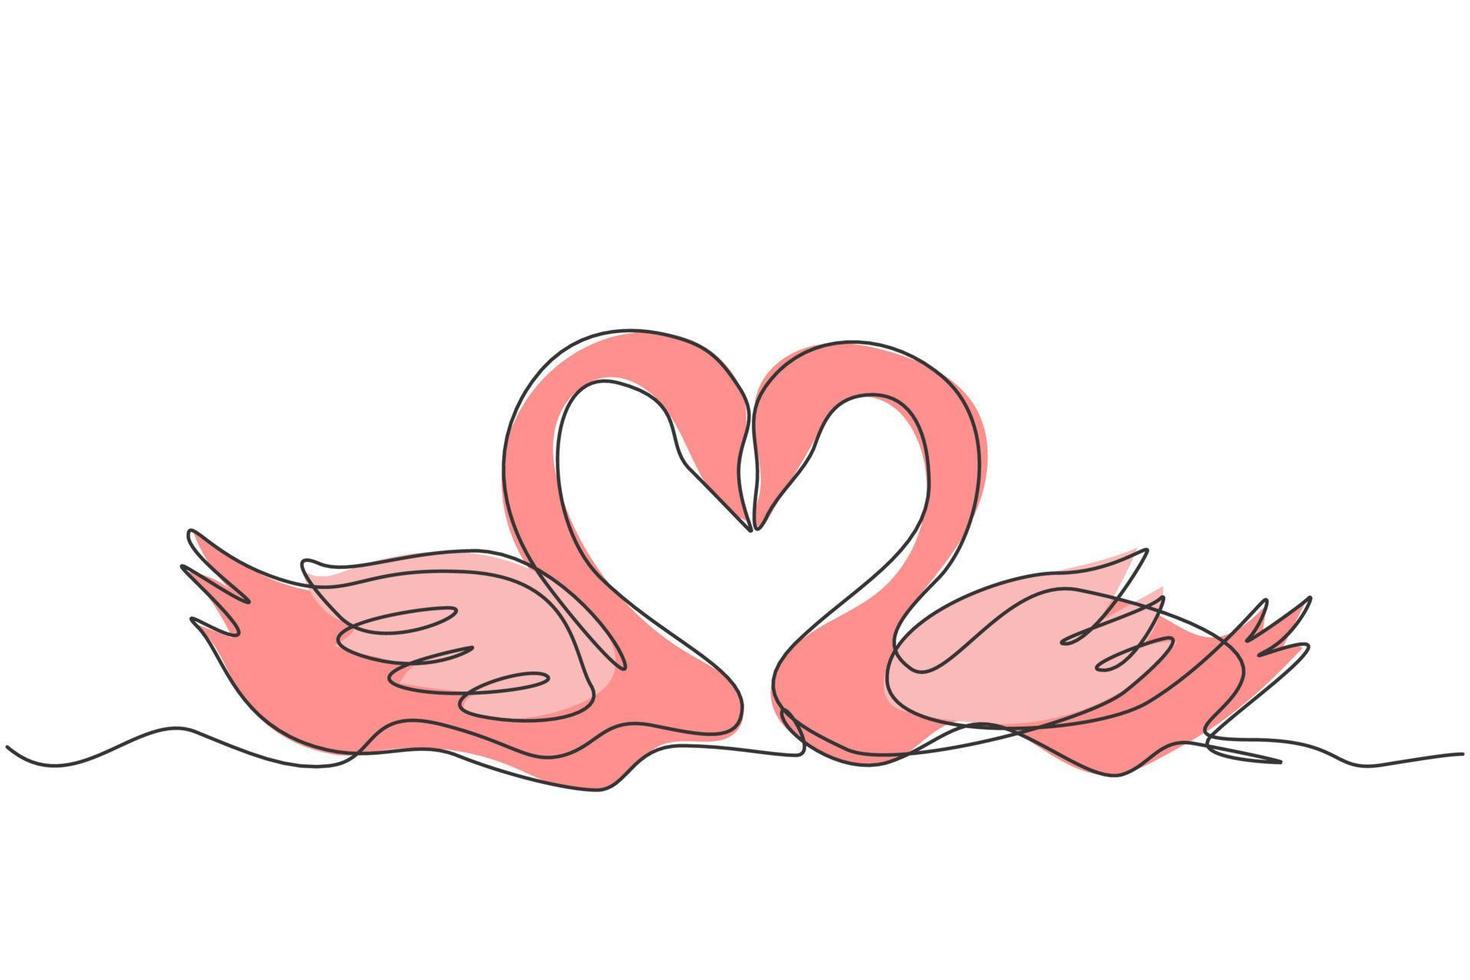 een doorlopende lijntekening van een schattig zwanenpaar dat op het meer zwemt en hun hoofden vormden een romantische hartvorm. romantische dierenliefde concept enkele regel grafisch tekenen ontwerp vectorillustratie vector